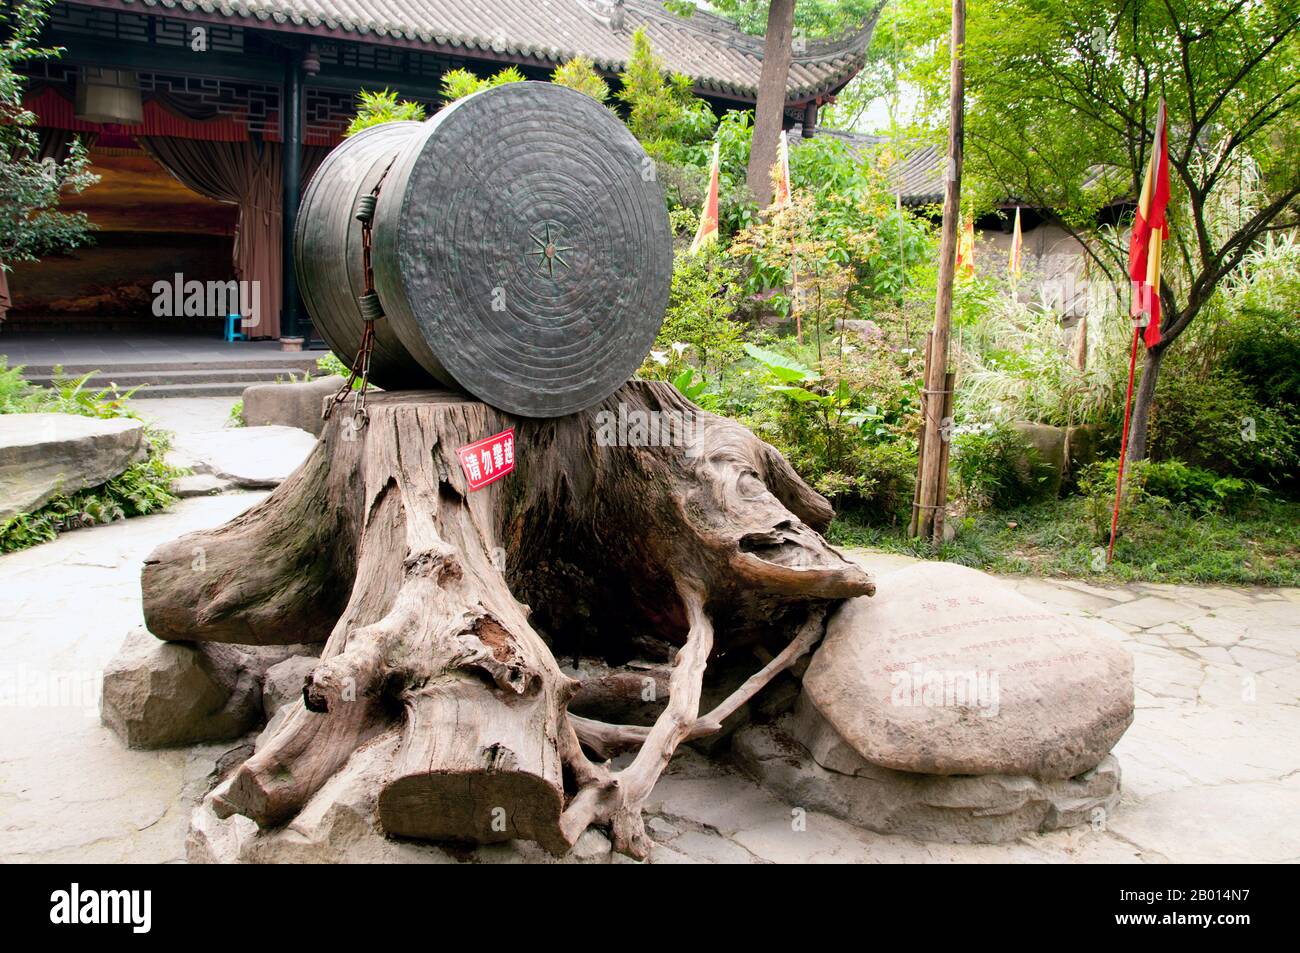 China: Seltene Bronzetrommel, Wuhou CI (Wuhou Ancestral oder Gedenkhalle), Chengdu, Provinz Sichuan. Wuhou CI ist Zhuge Liang, dem Helden des Klassikers „die Romantik der drei Königreiche“, und seinem Kaiser Liu bei gewidmet. Zhuge Liang (181–234) war Kanzler von Shu Han während der Zeit der drei Königreiche der chinesischen Geschichte. Er wird oft als der größte und versierteste Stratege seiner Zeit anerkannt. Chengdu, früher bekannt als Chengtu, ist die Hauptstadt der Provinz Sichuan im Südwesten Chinas. Stockfoto